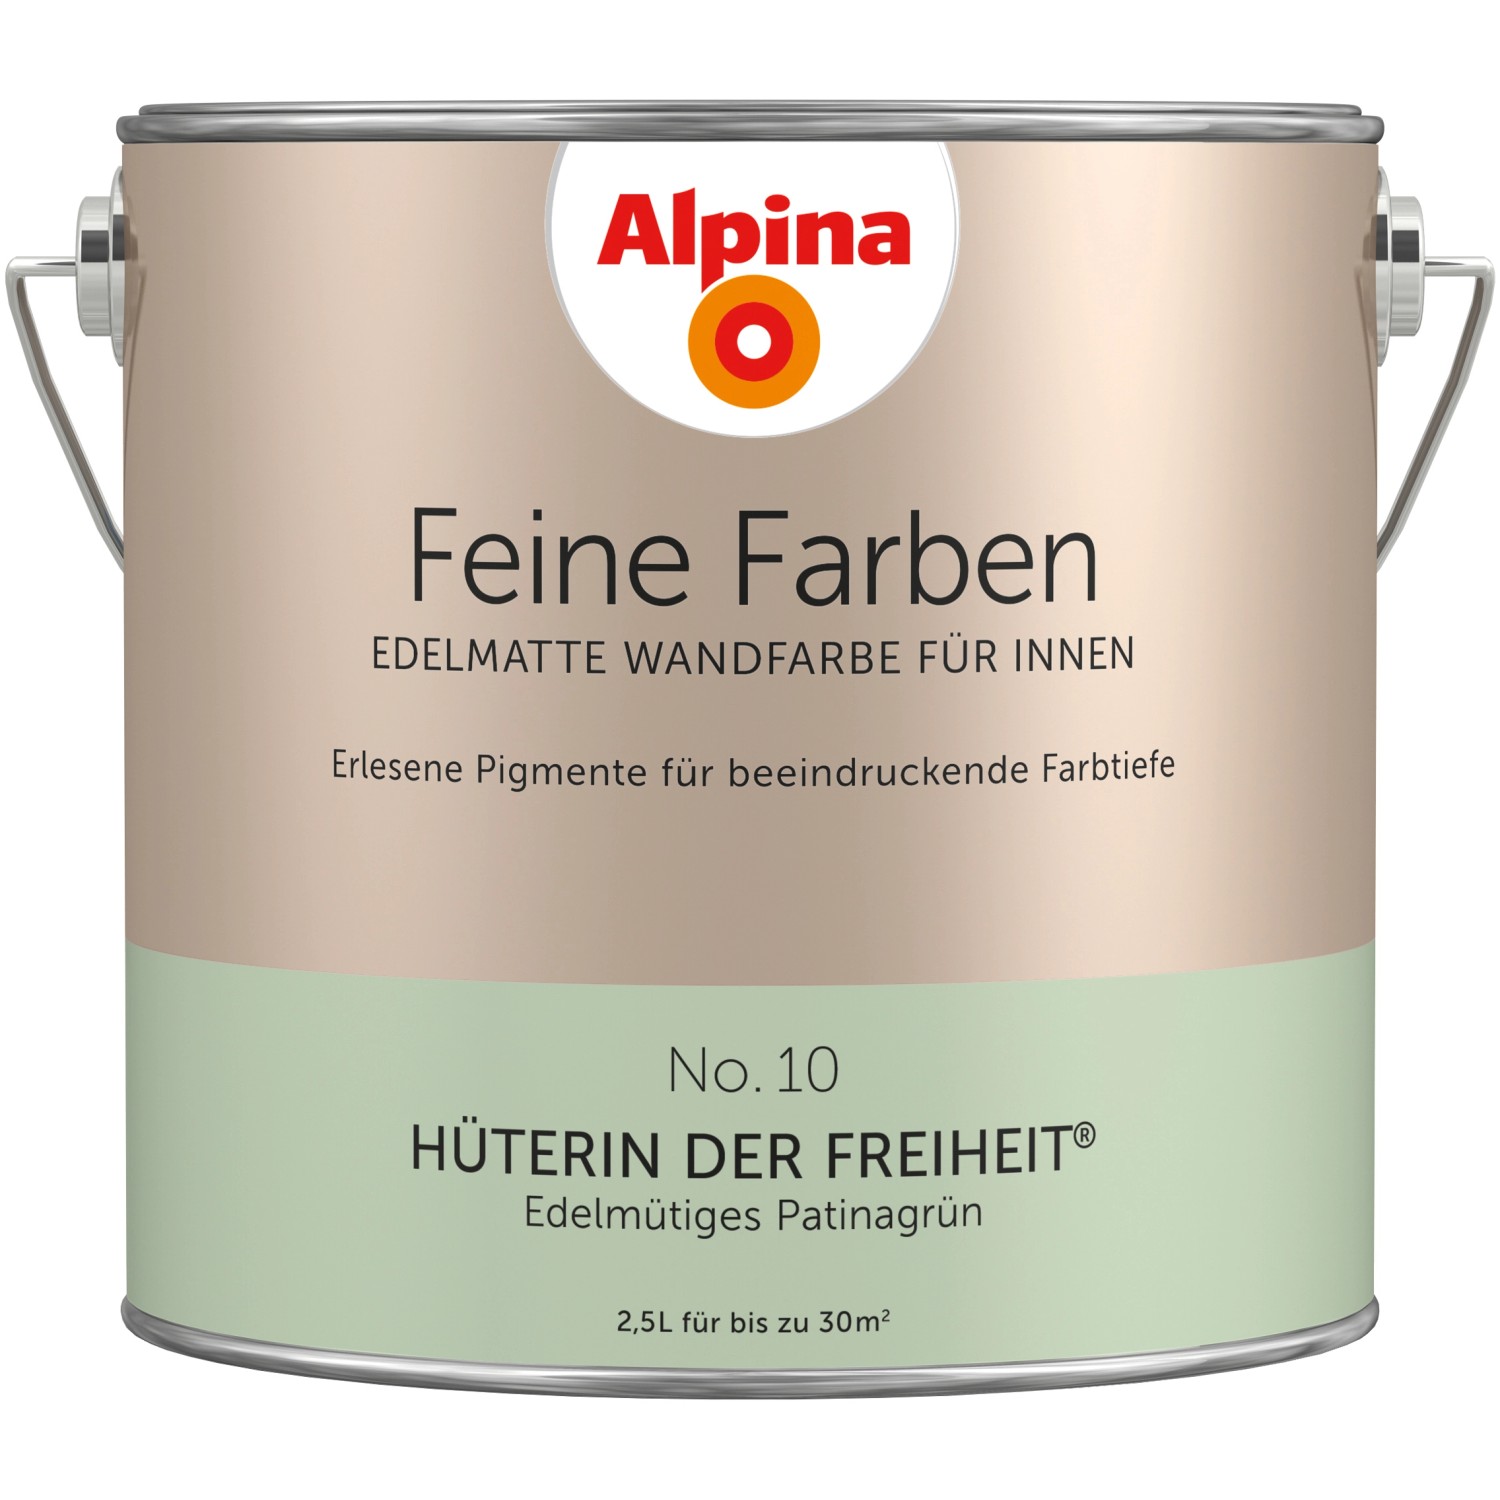 Alpina Feine Farben No. 10 Hüterin der Freiheit® Patinagrün edelmatt 2,5 l